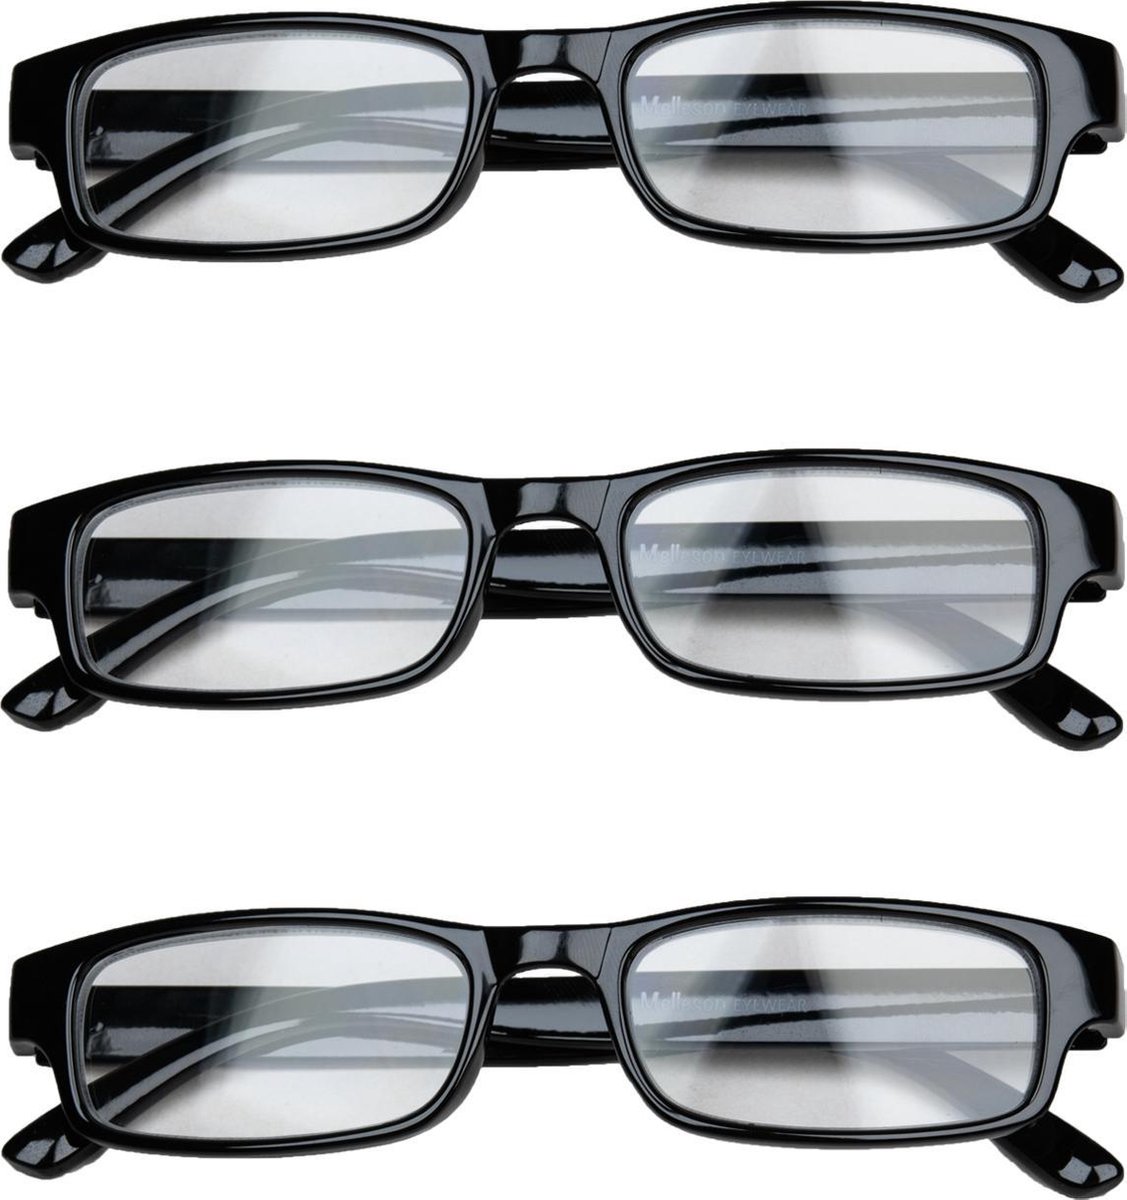 Melleson Eyewear overkijk leesbril zwart +1.00 x 3 stuks